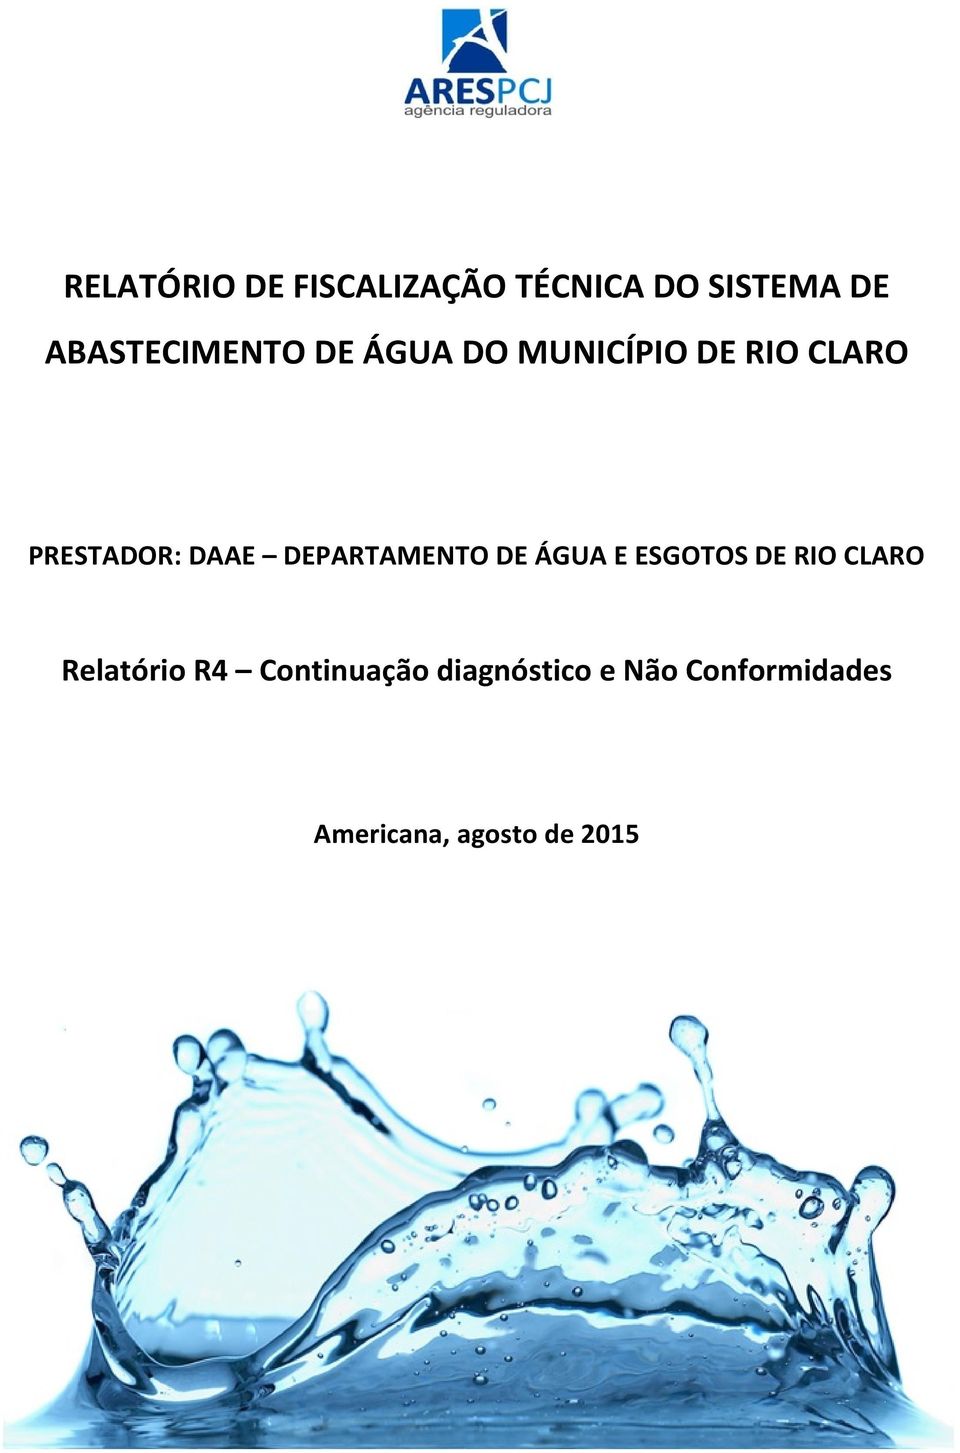 DAAE DEPARTAMENTO DE ÁGUA E ESGOTOS DE RIO CLARO Relatório